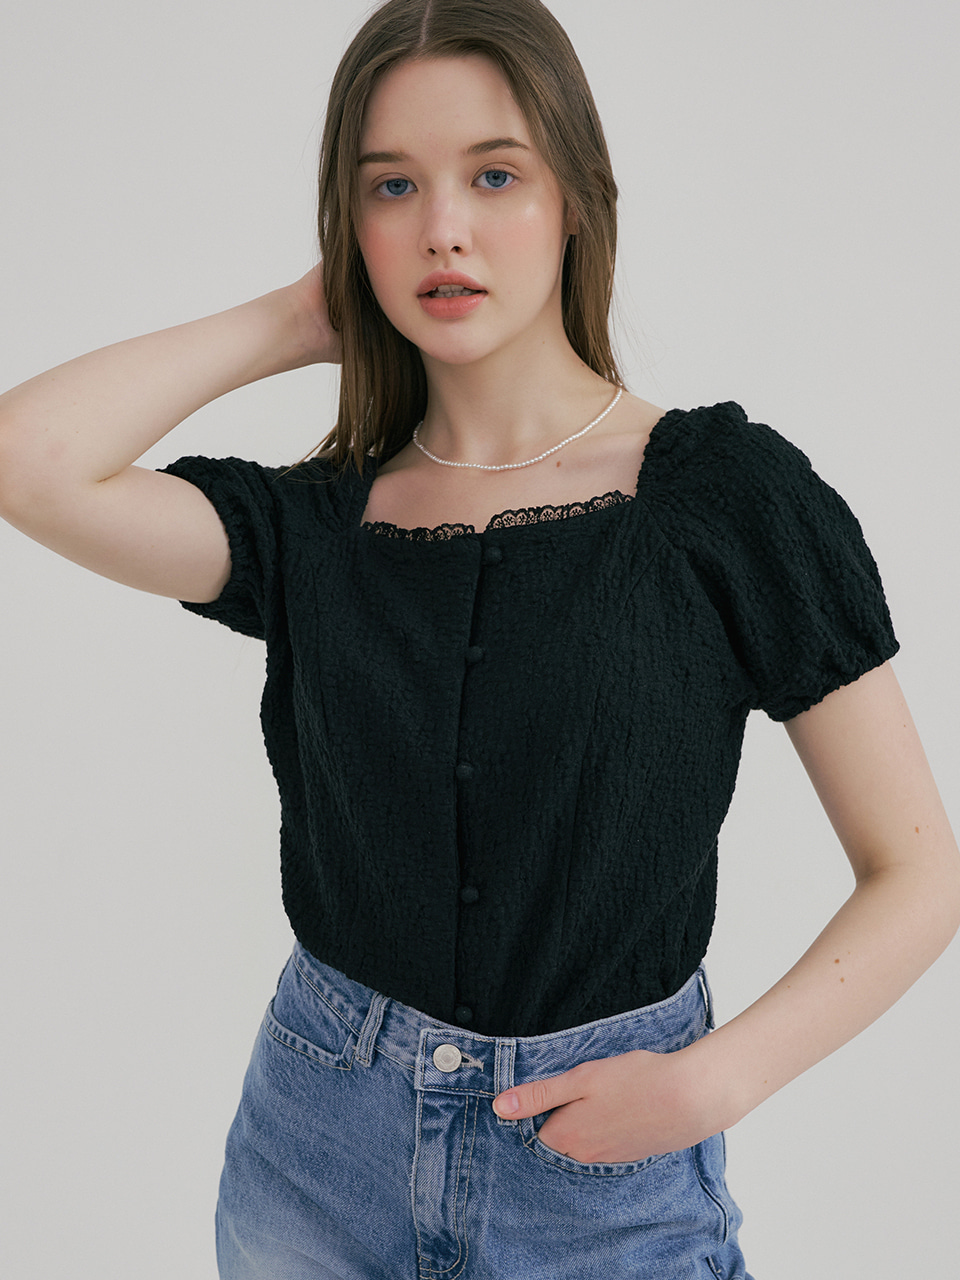 monts 1475 summer lace square neck blouse (black)